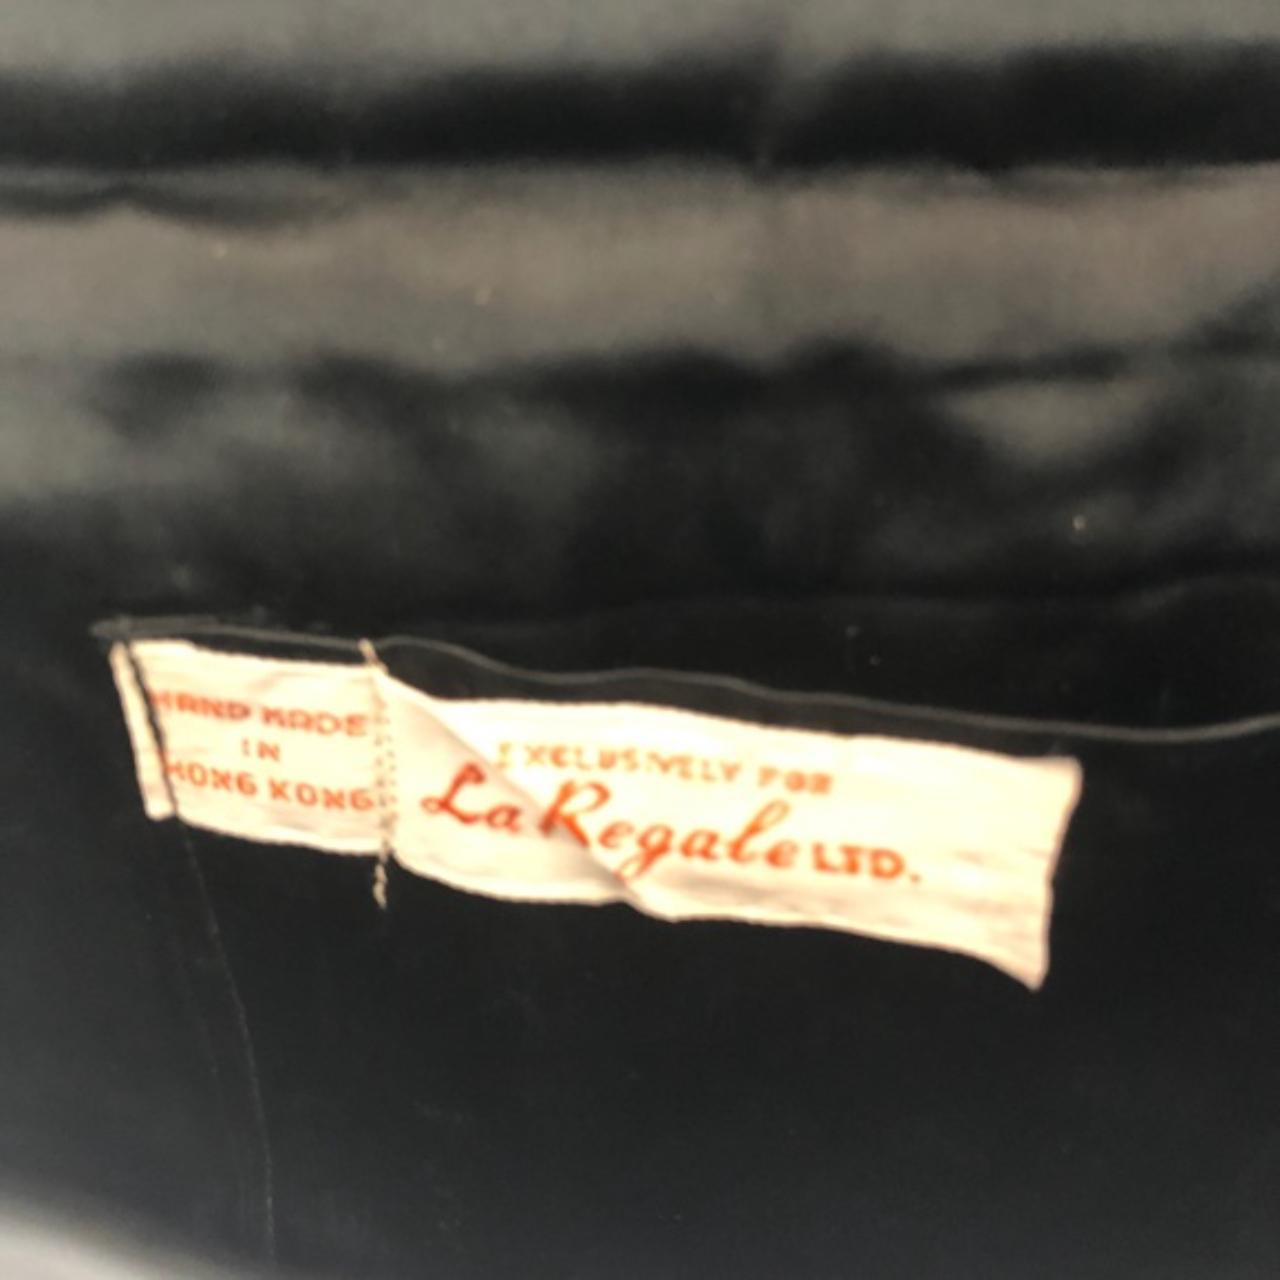 Vintage La Regale Ltd Beaded Black and Gold Evening - Depop